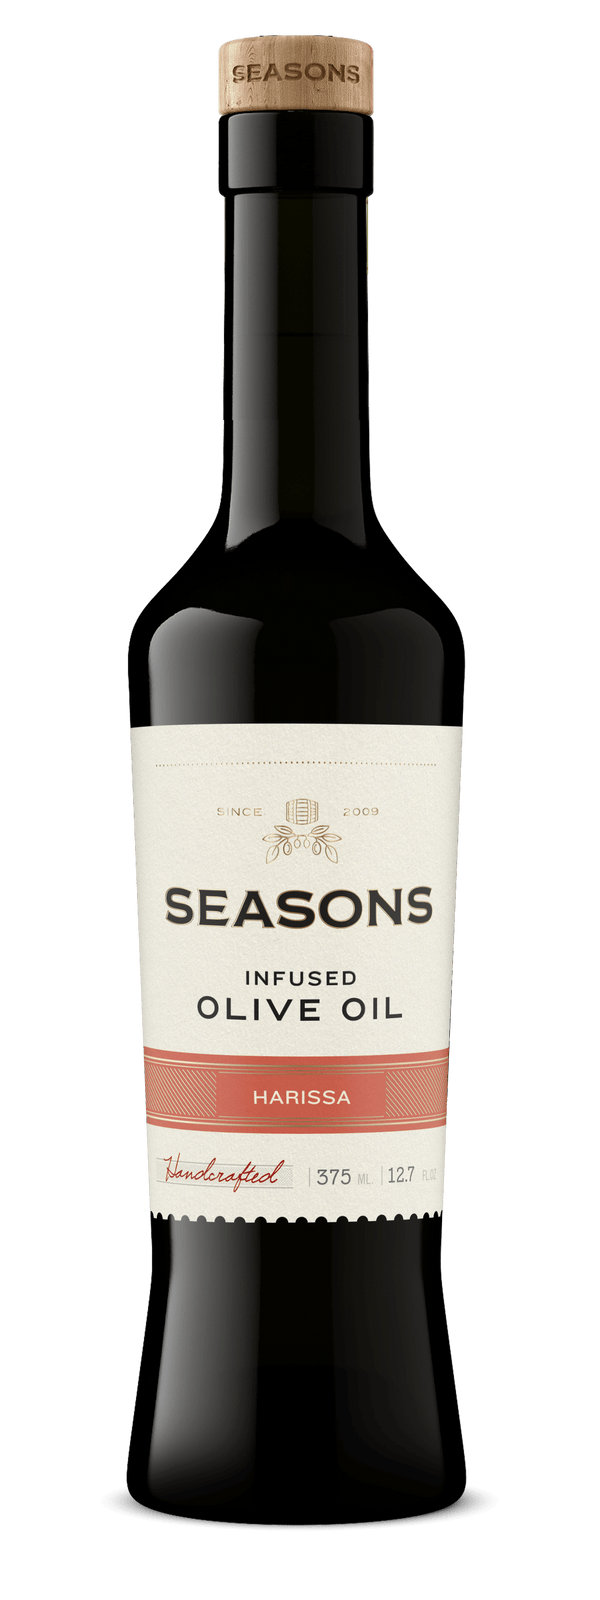 Seasons Infused Olive Oil 375mL Harissa